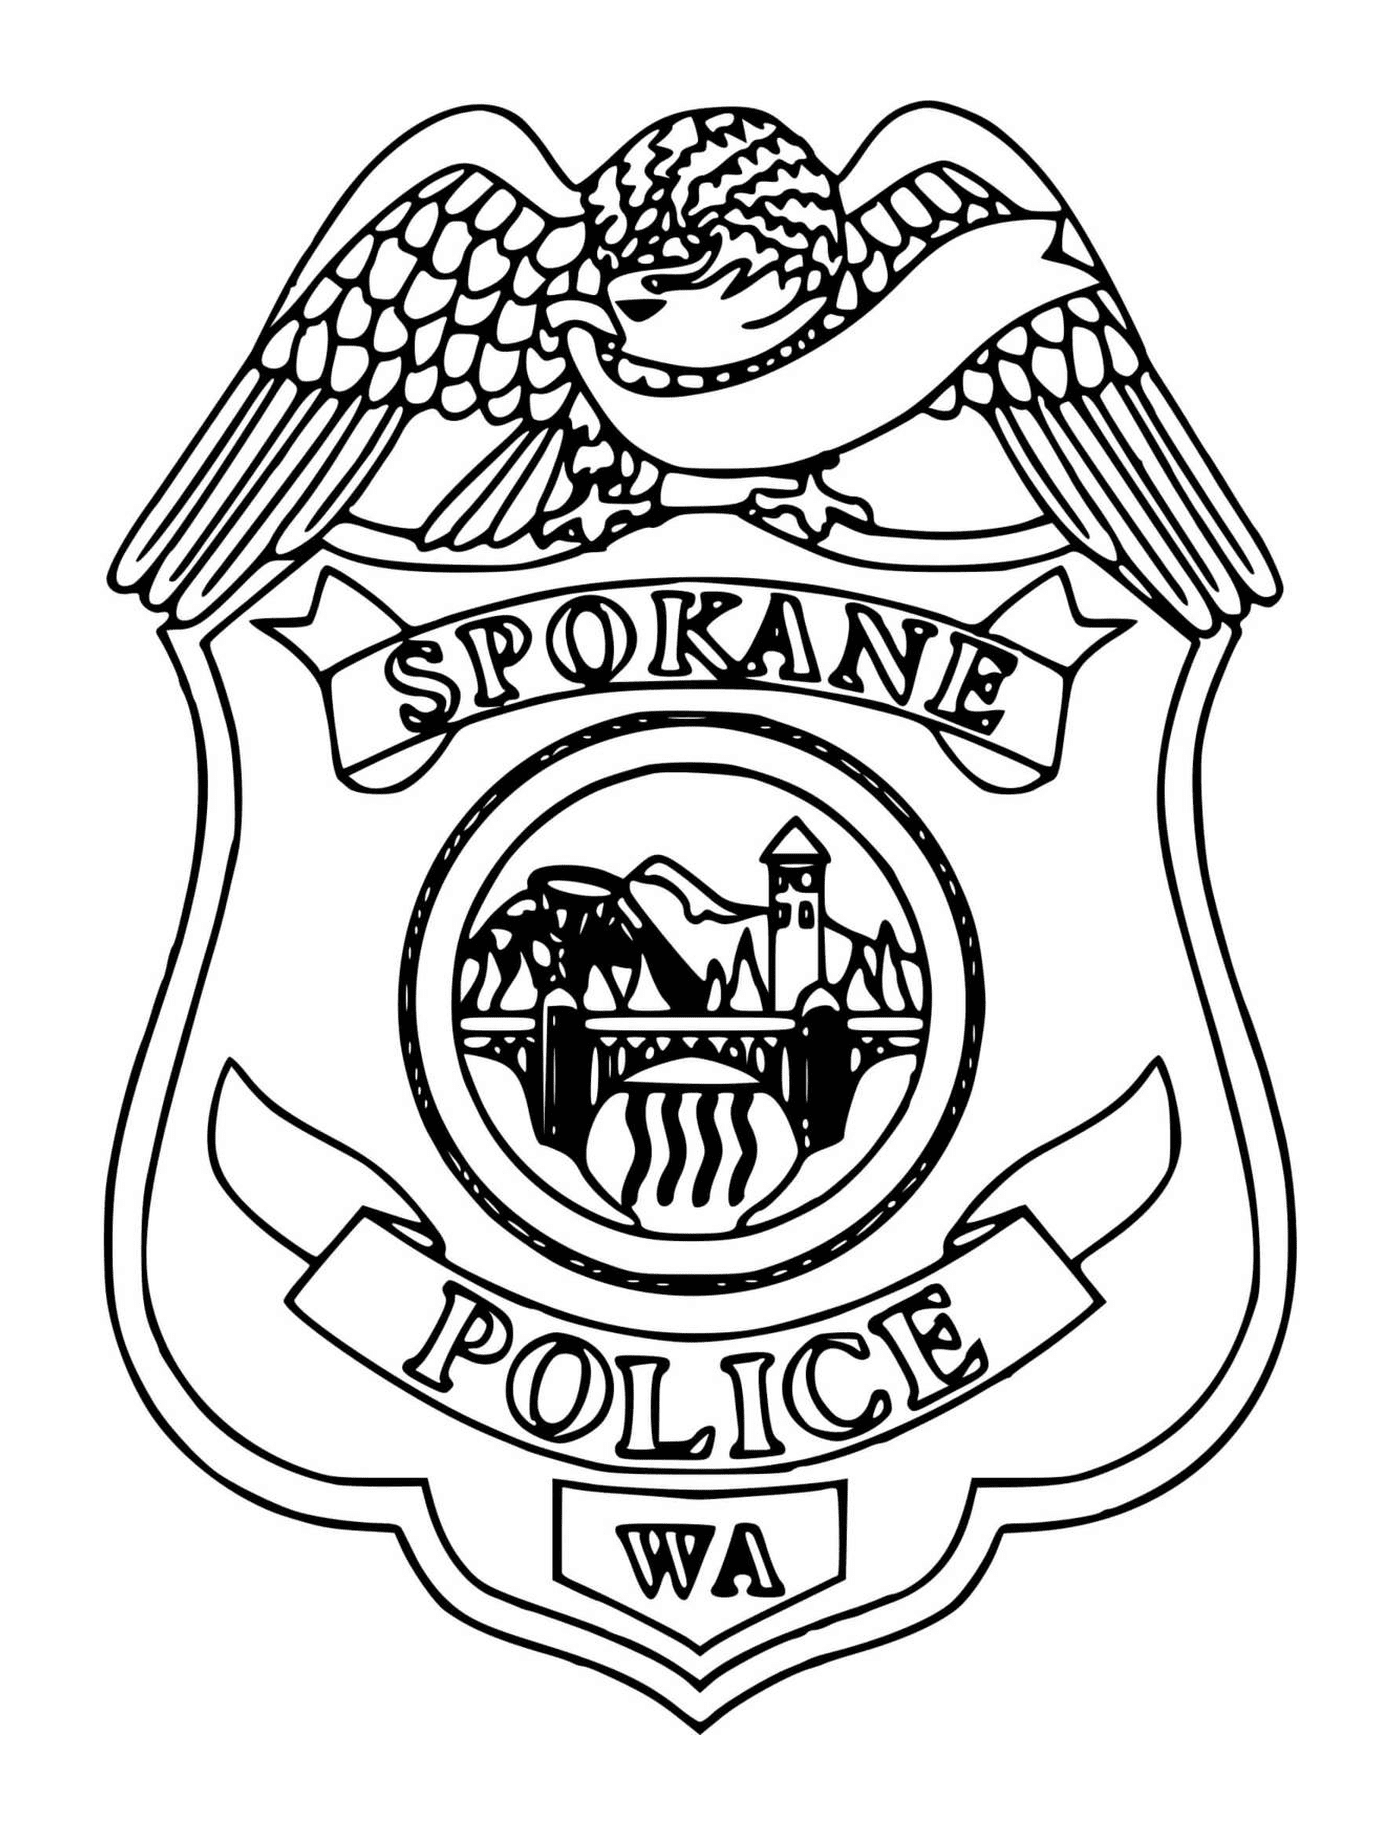  Полицейский значок Спокана 